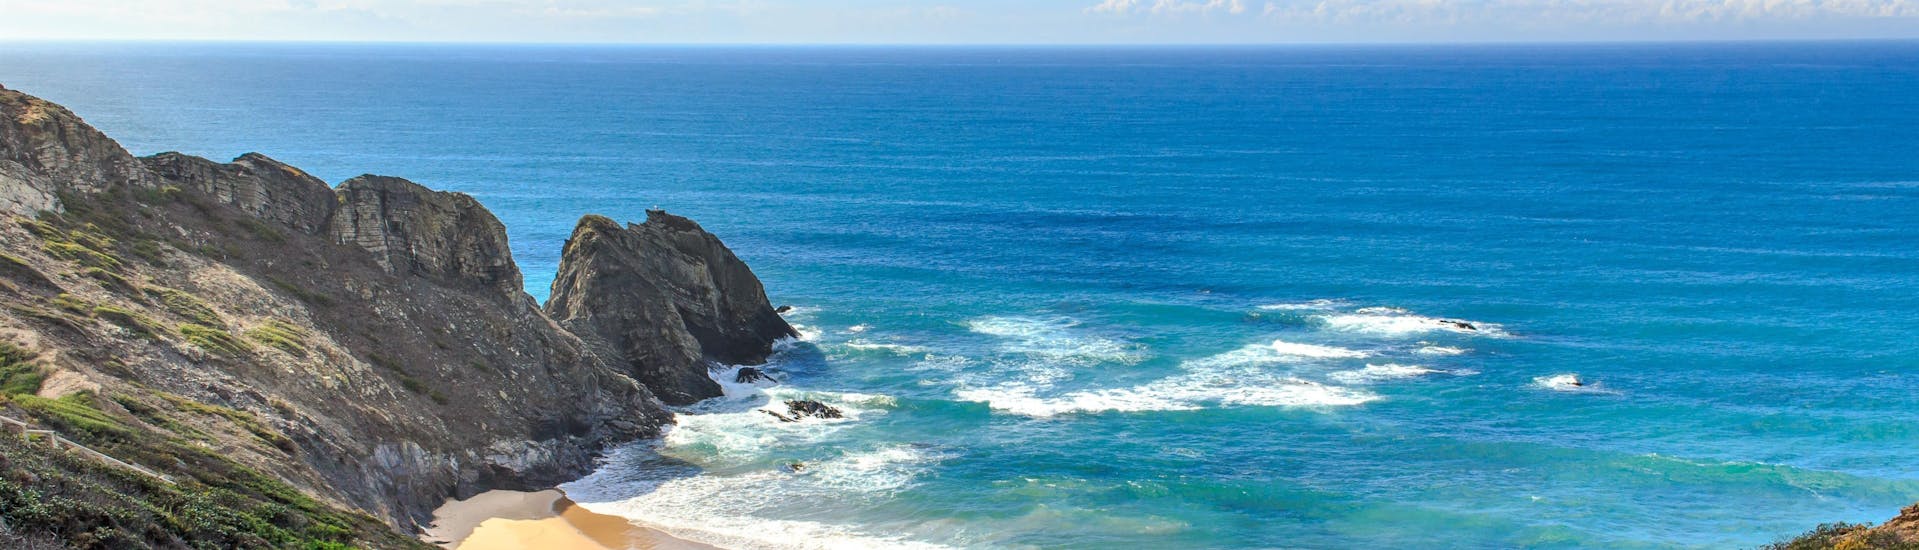 Un parapentiste est émerveillé par le paysage lors d'un vol en parapente biplace dans la célèbre destination de parapente Praia da Cordoama.